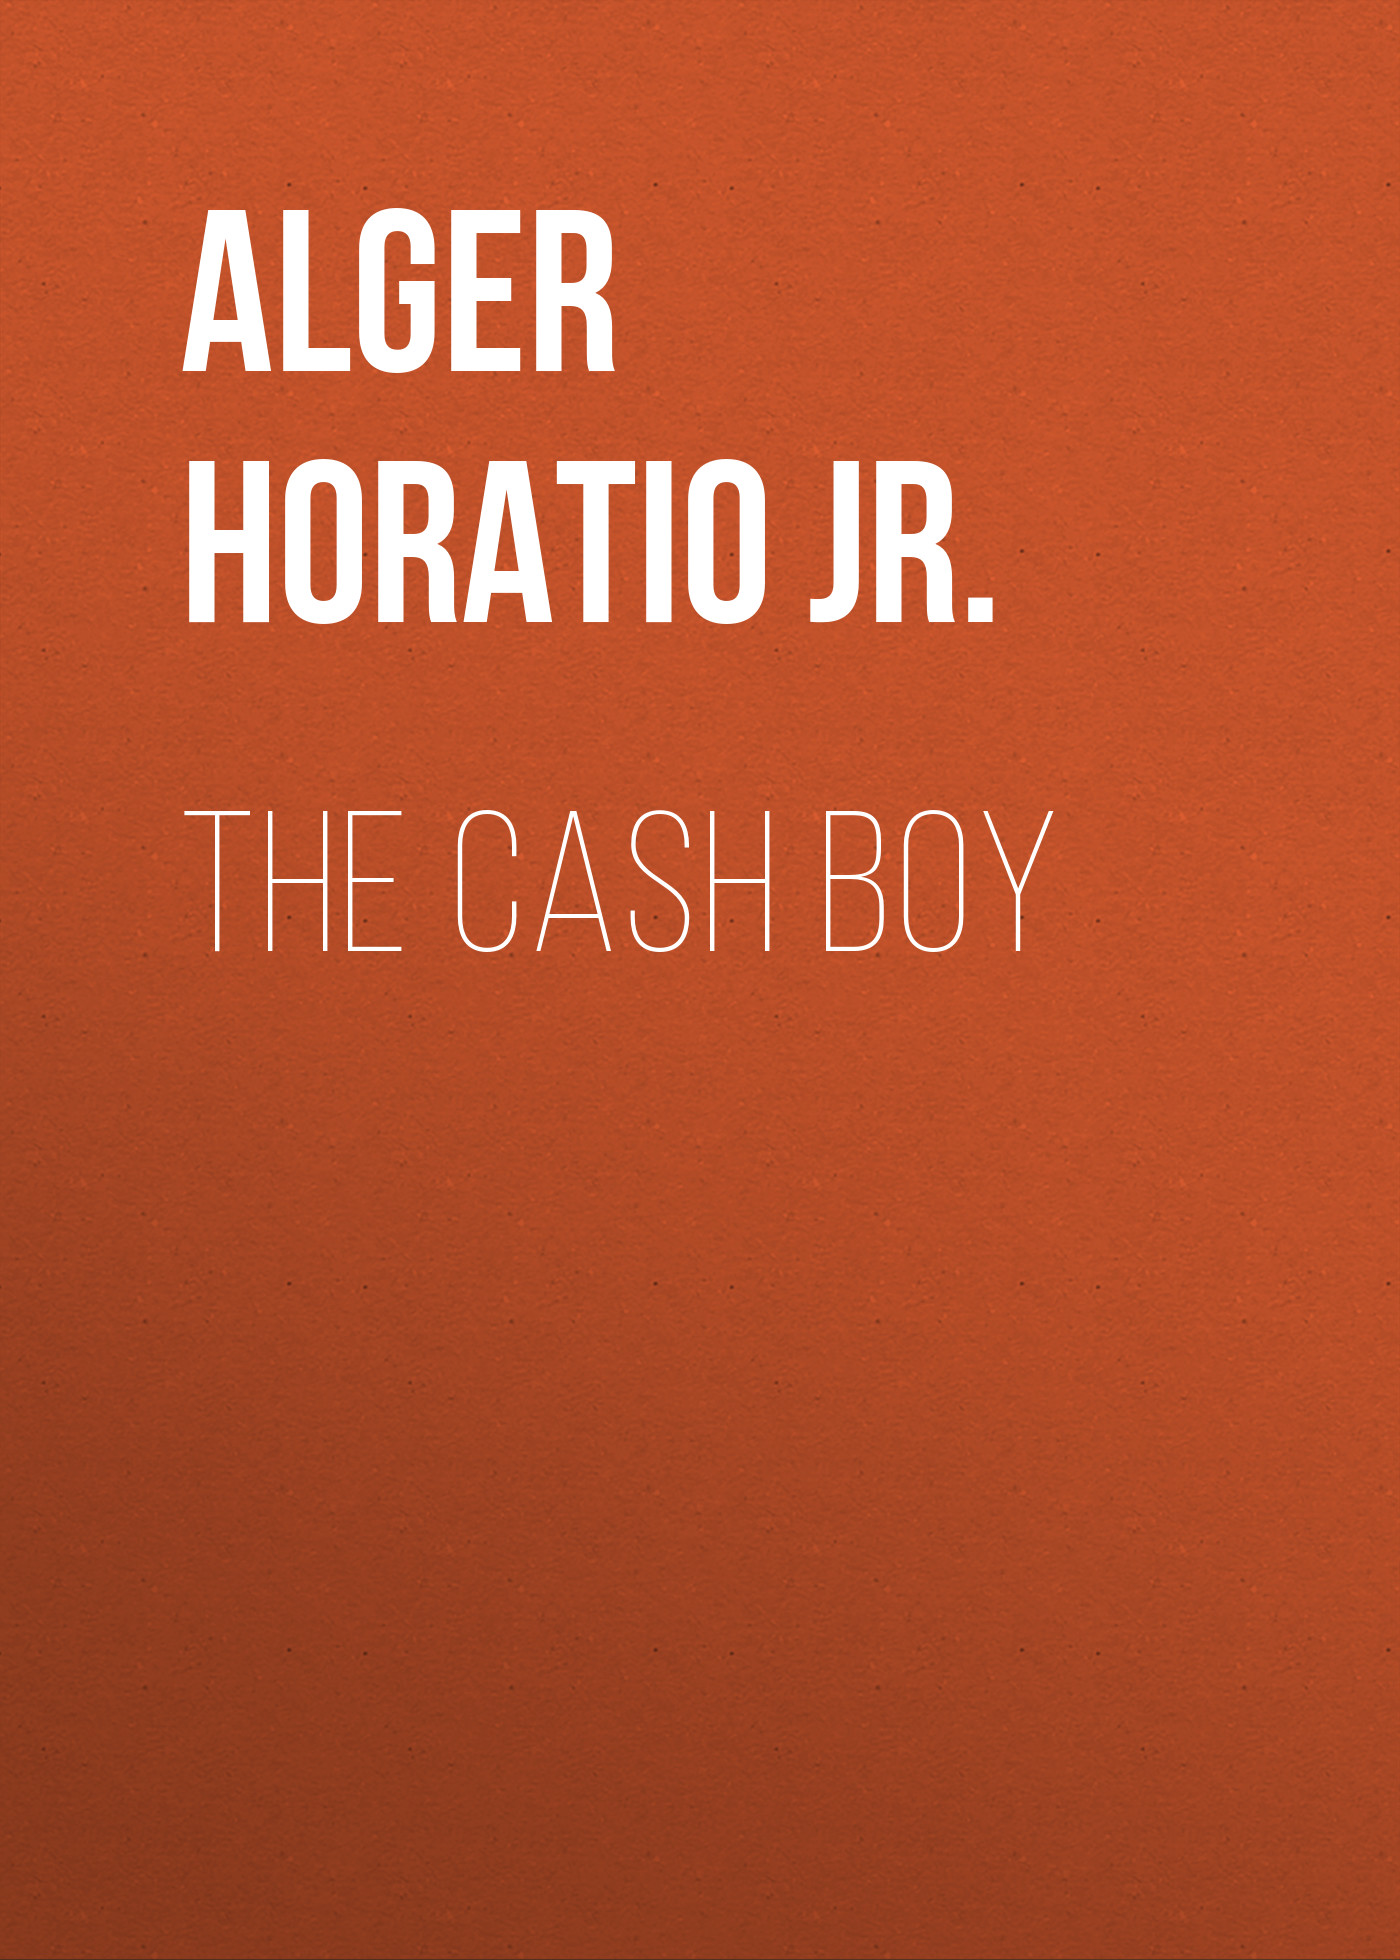 Книга The Cash Boy из серии , созданная Horatio Alger, может относится к жанру Зарубежные детские книги, Литература 19 века, Зарубежная старинная литература, Зарубежная классика. Стоимость электронной книги The Cash Boy с идентификатором 34841318 составляет 0 руб.